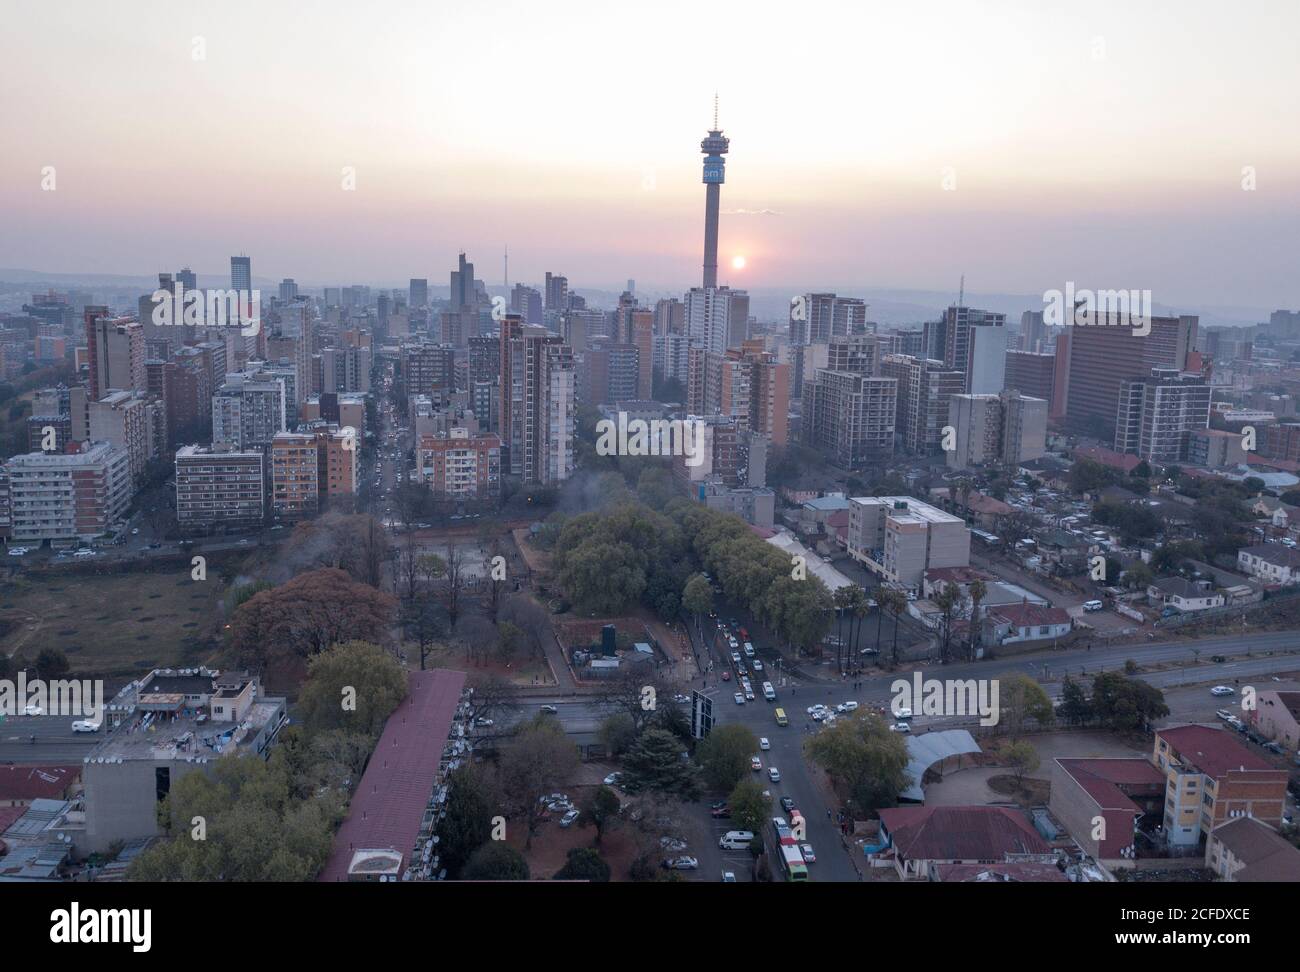 Vue aérienne du CBD de Johannesburg au coucher du soleil, Afrique du Sud Banque D'Images